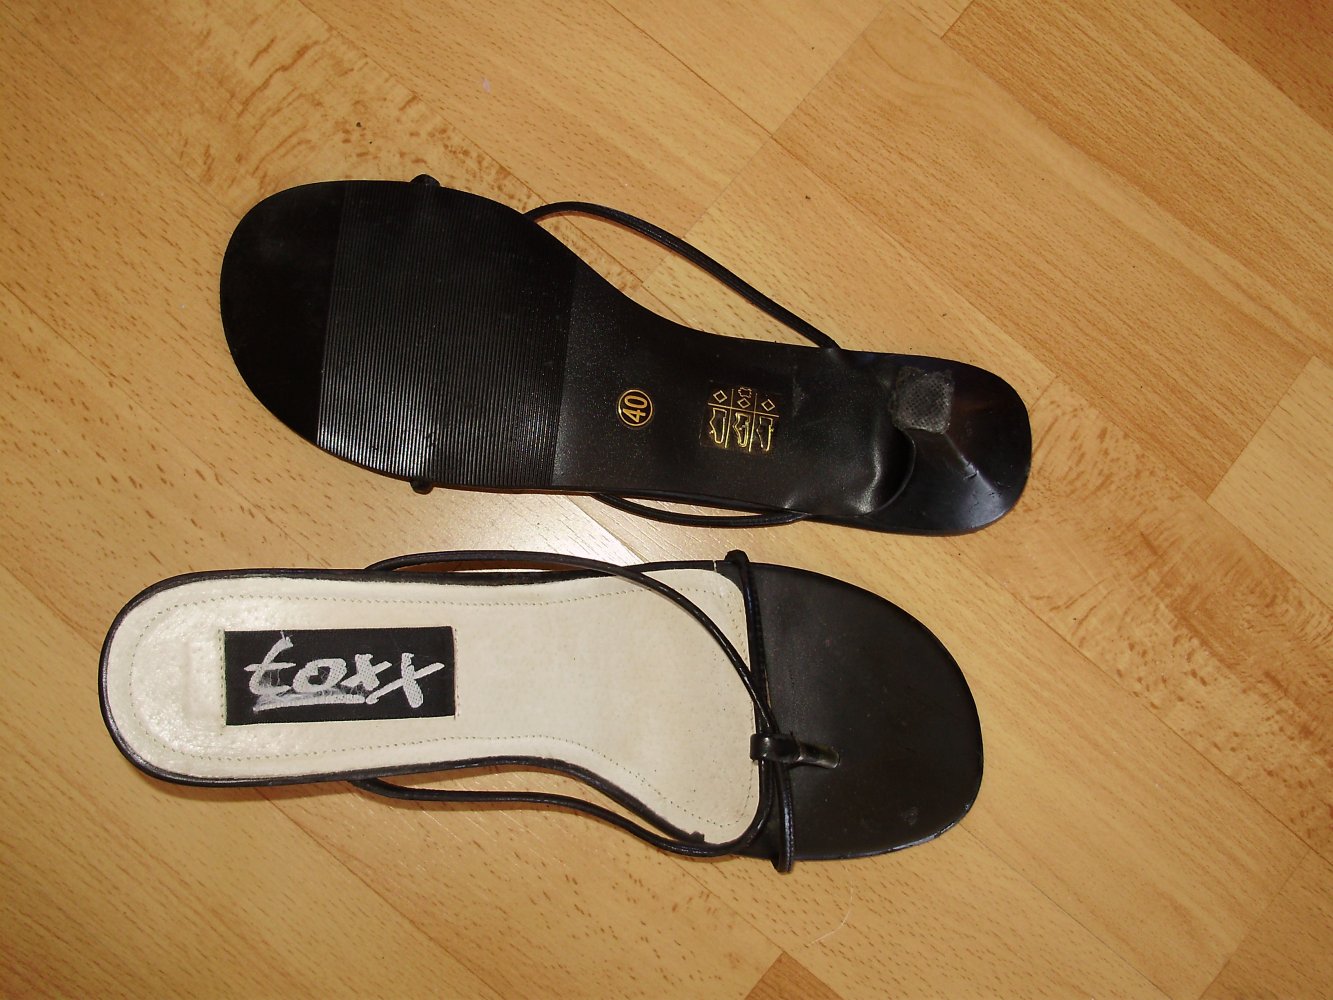 Toxx elegante Sandalen schwarz ganz feine Riemchen Gr 40 wie neu